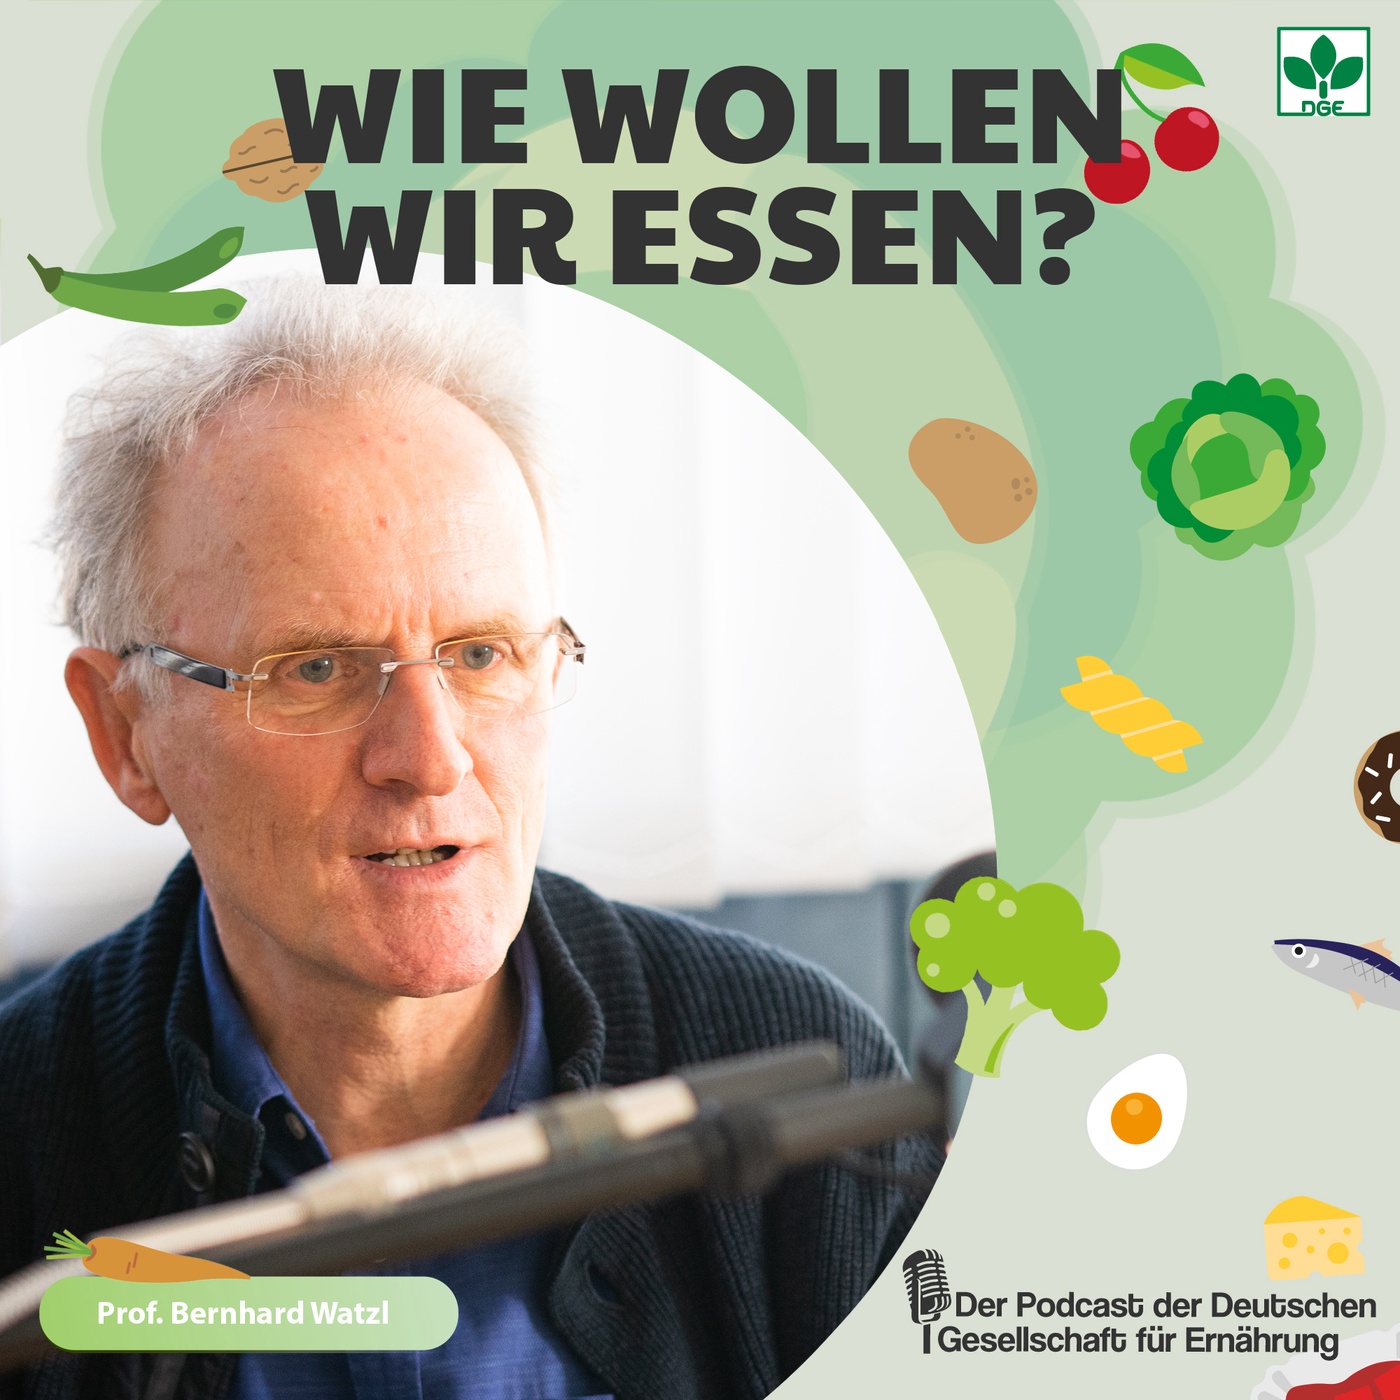 Gut für uns und unseren Planeten! - Individuelle Gesundheit und Planetary Health Diet mit Prof. Bernhard Watzl (S1F2)